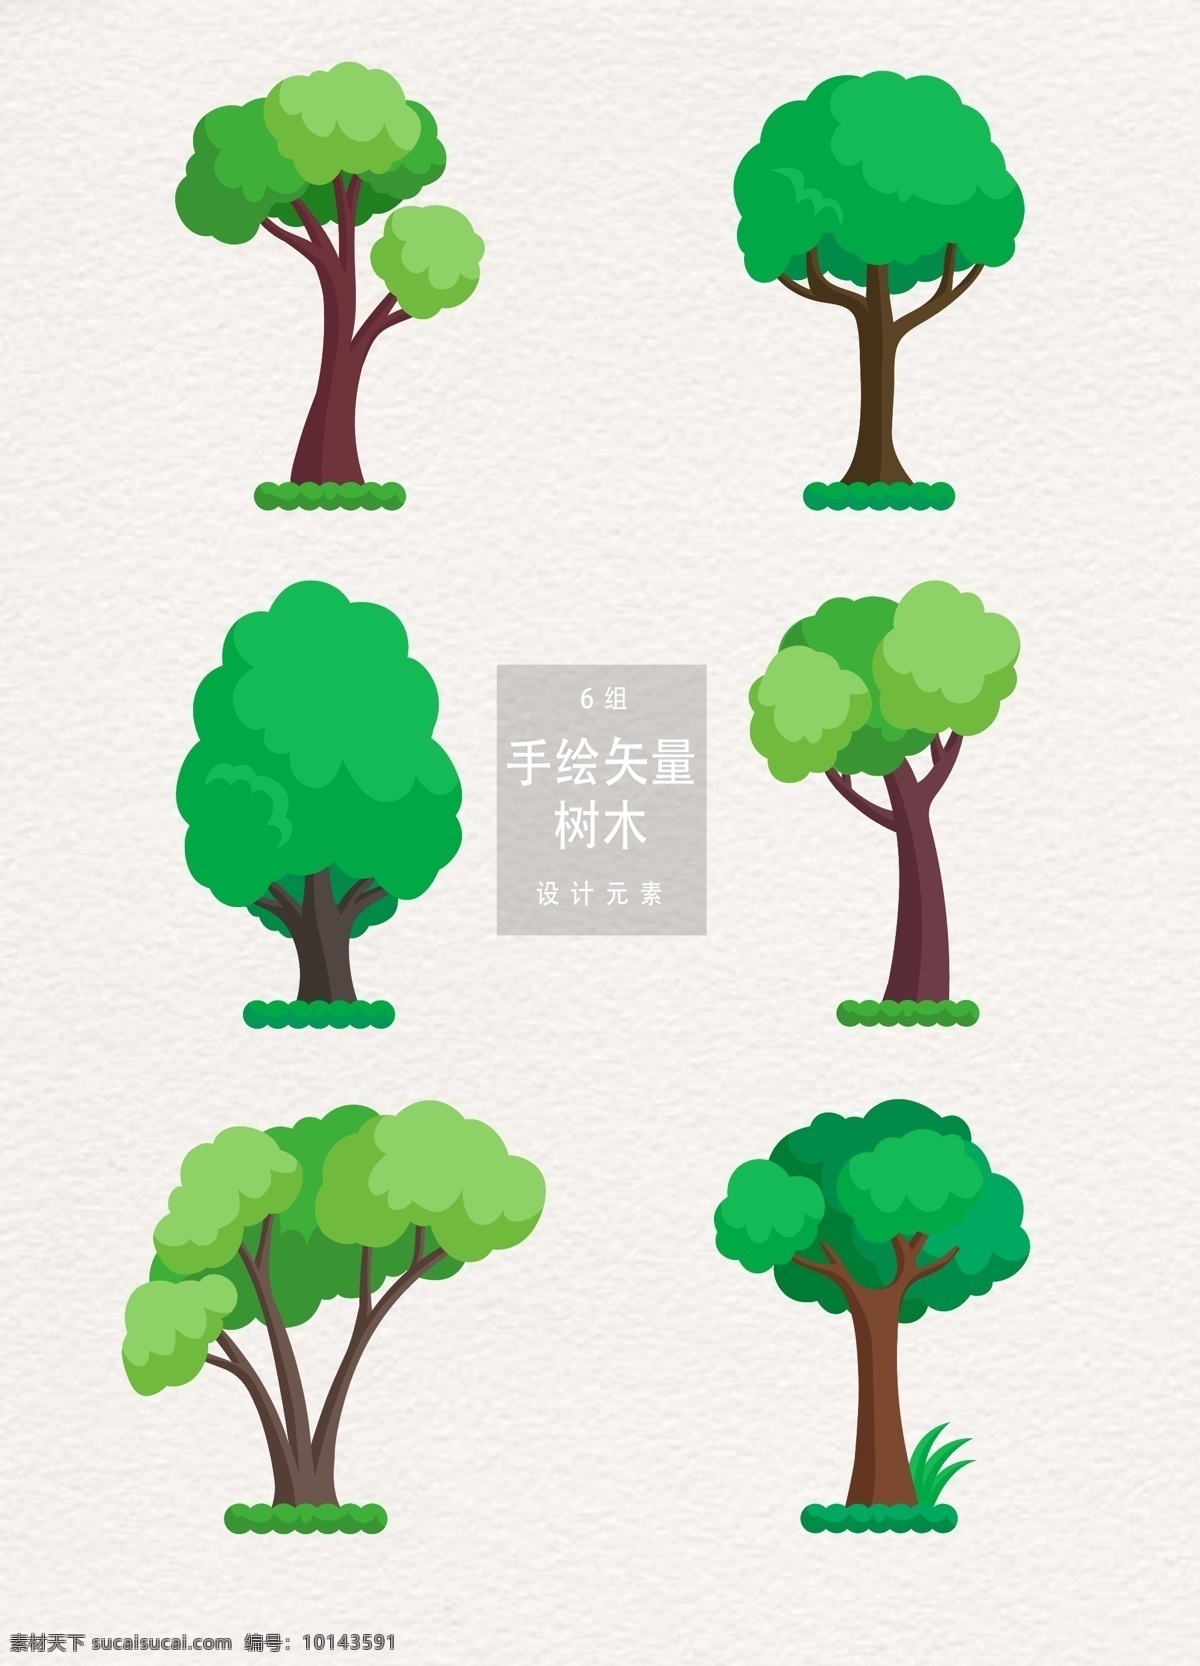 手绘 矢量 树木 设计素材 元素 夏季 立夏 夏天 ai素材 树 绿树 手绘树木 树木素材